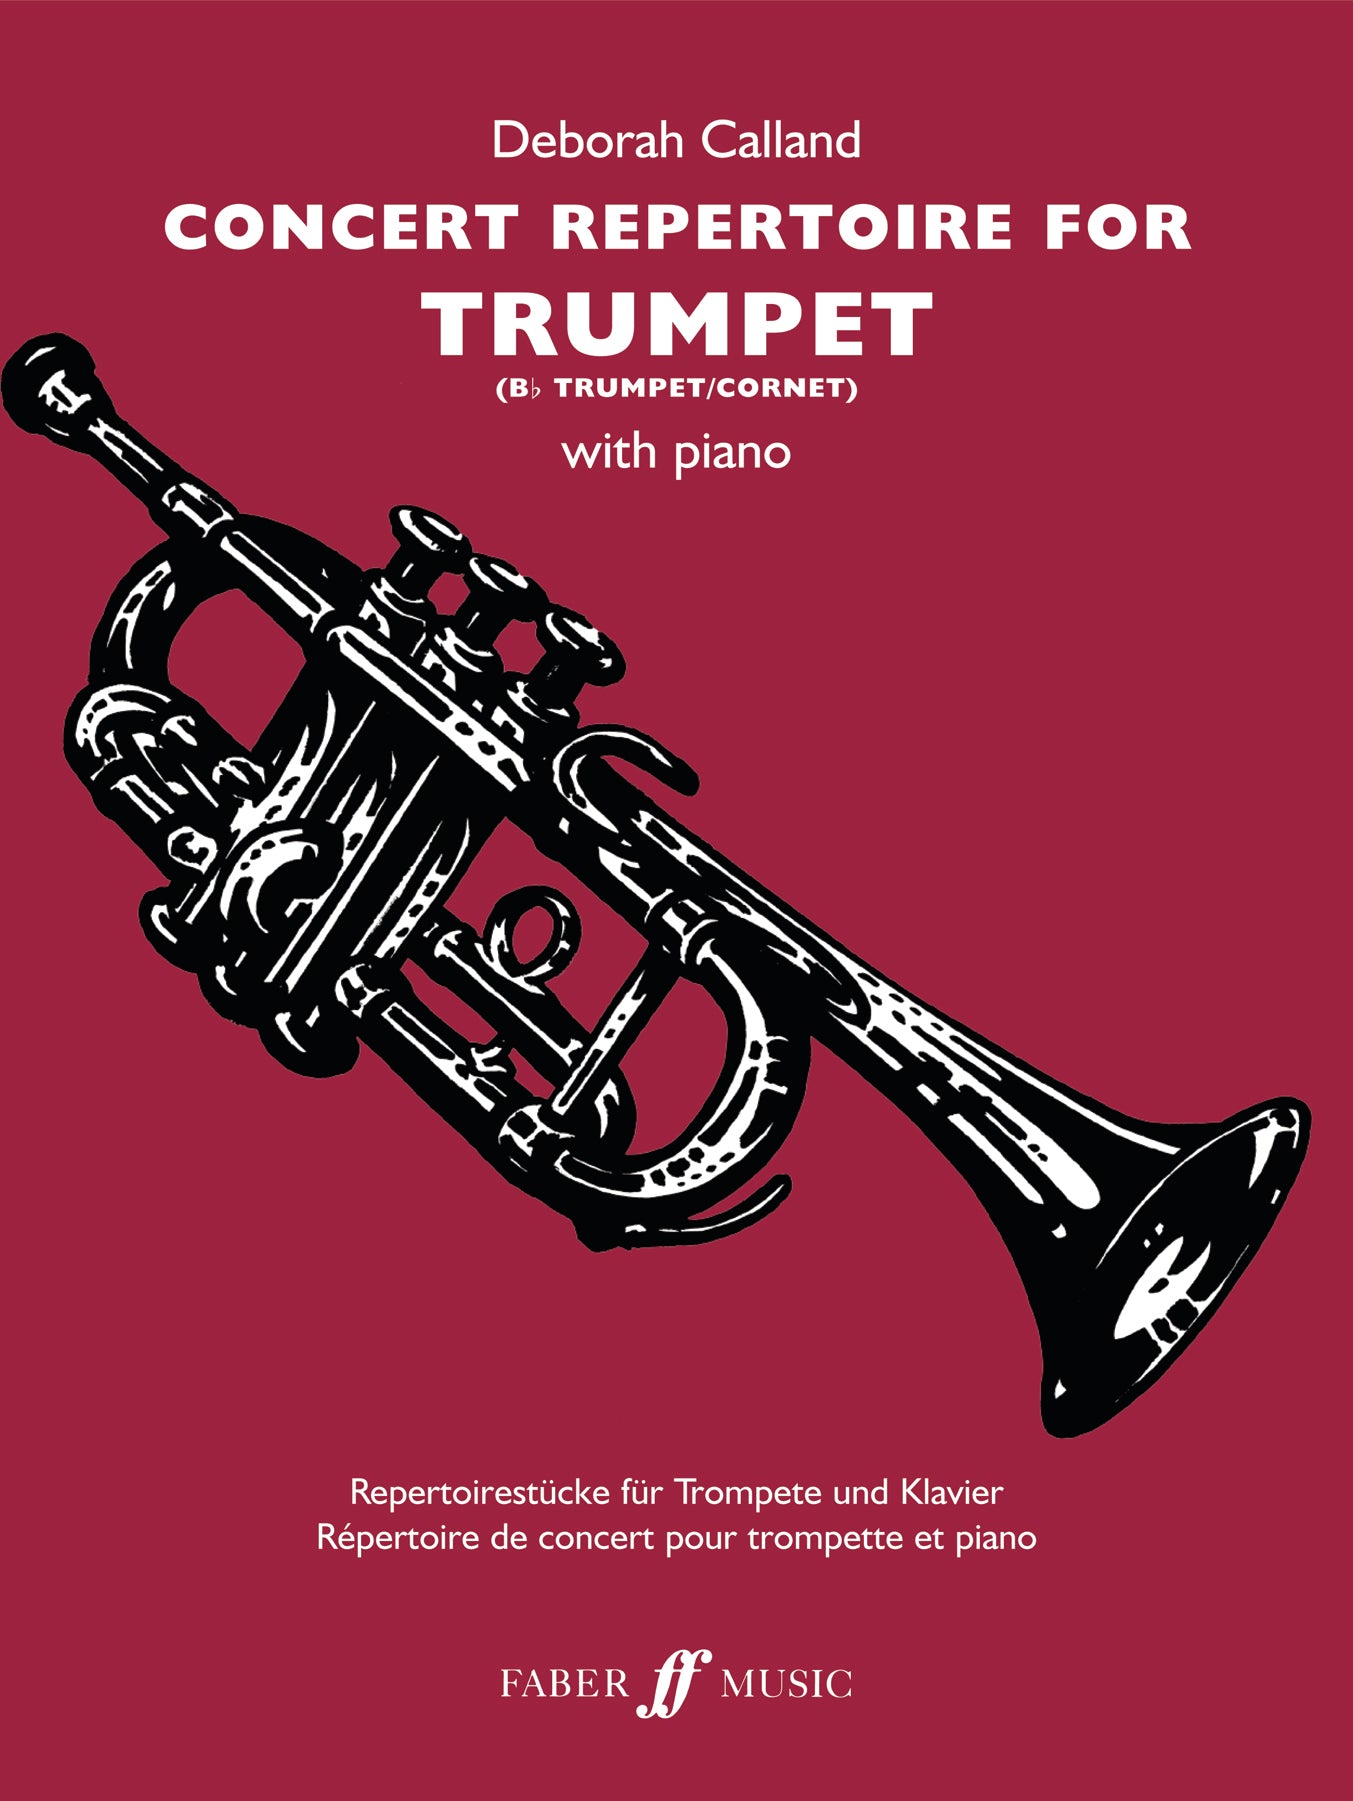 Concert Repertoire - D Calland  Trumpet